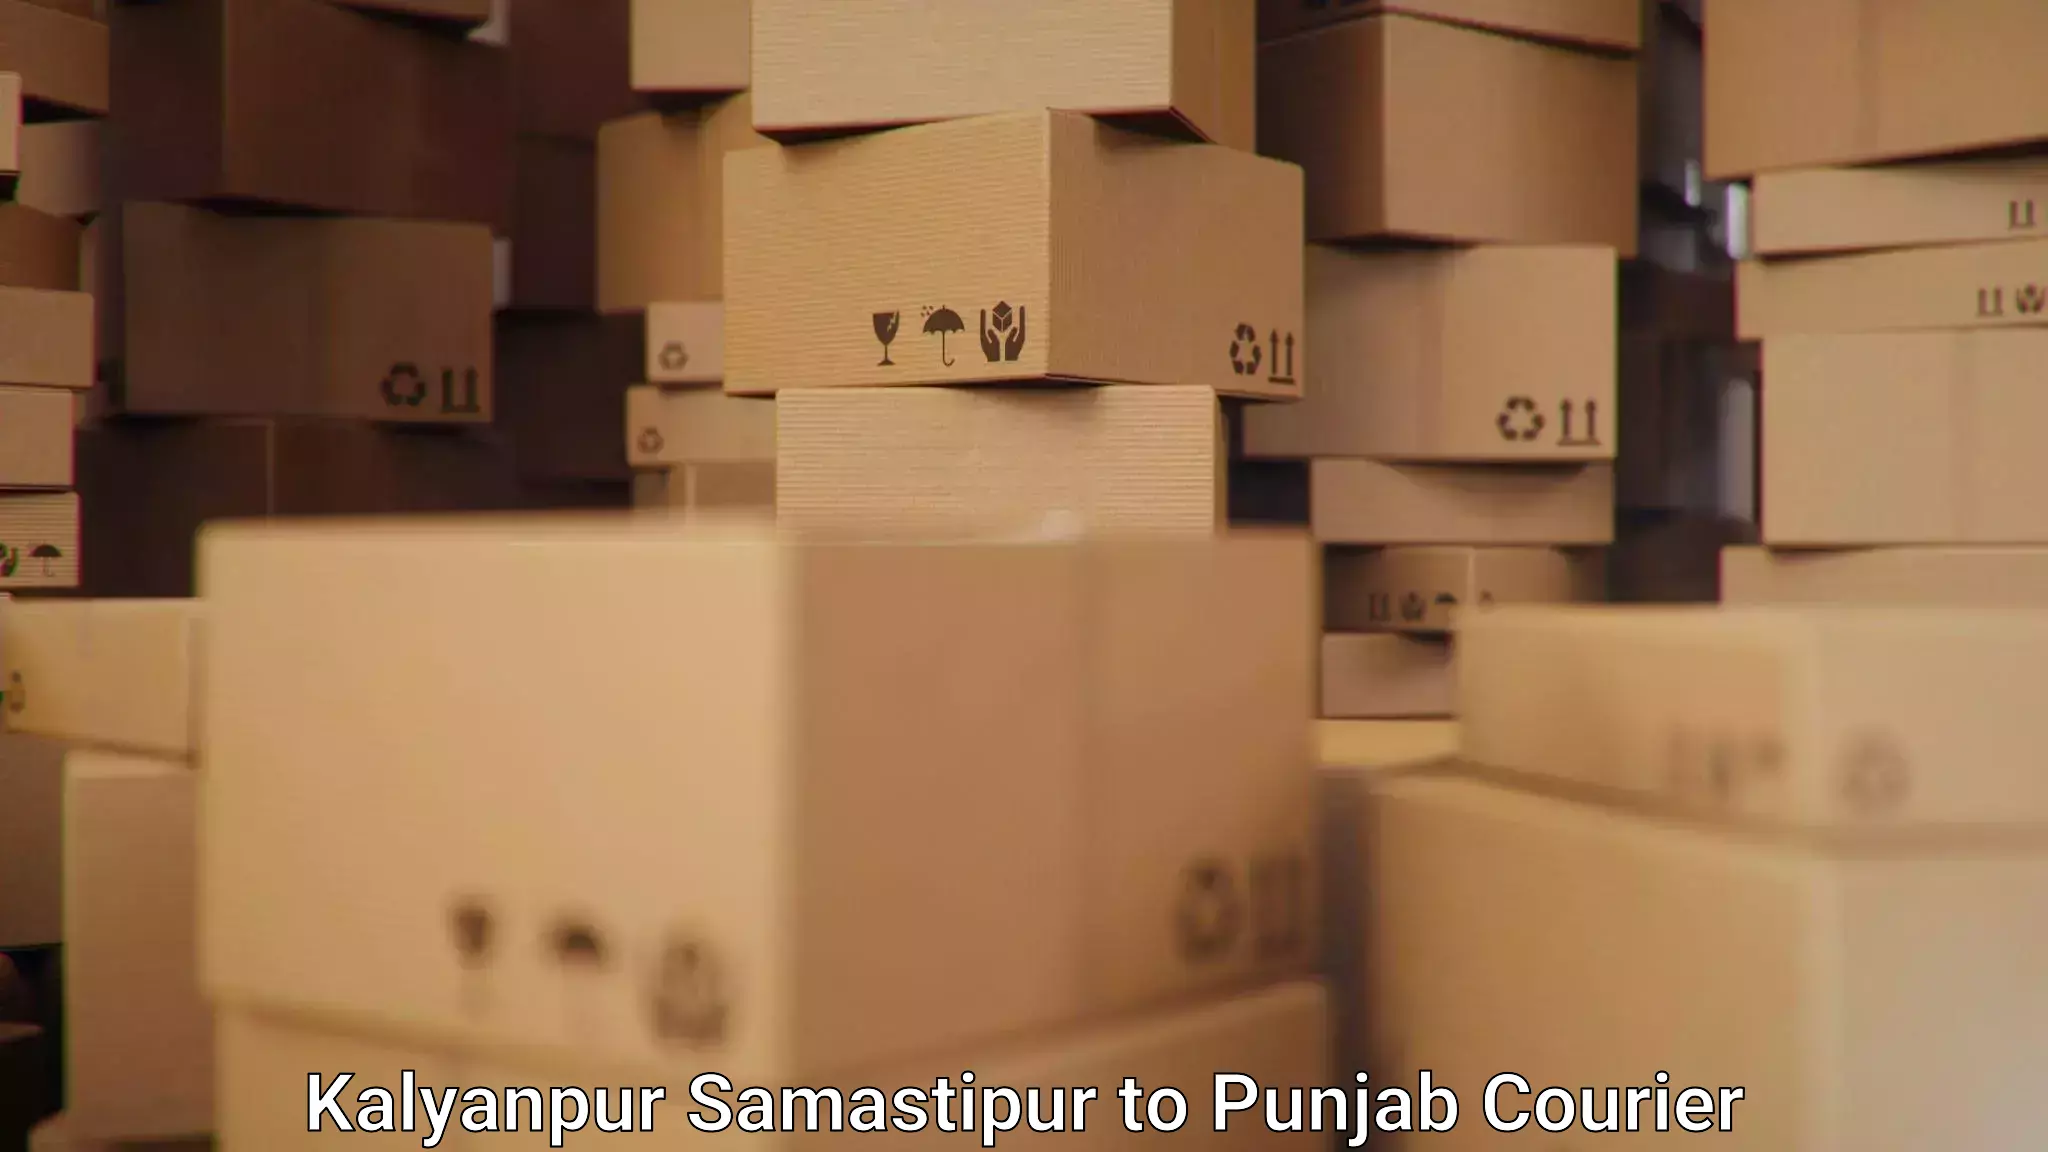 Seamless shipping experience Kalyanpur Samastipur to Machhiwara